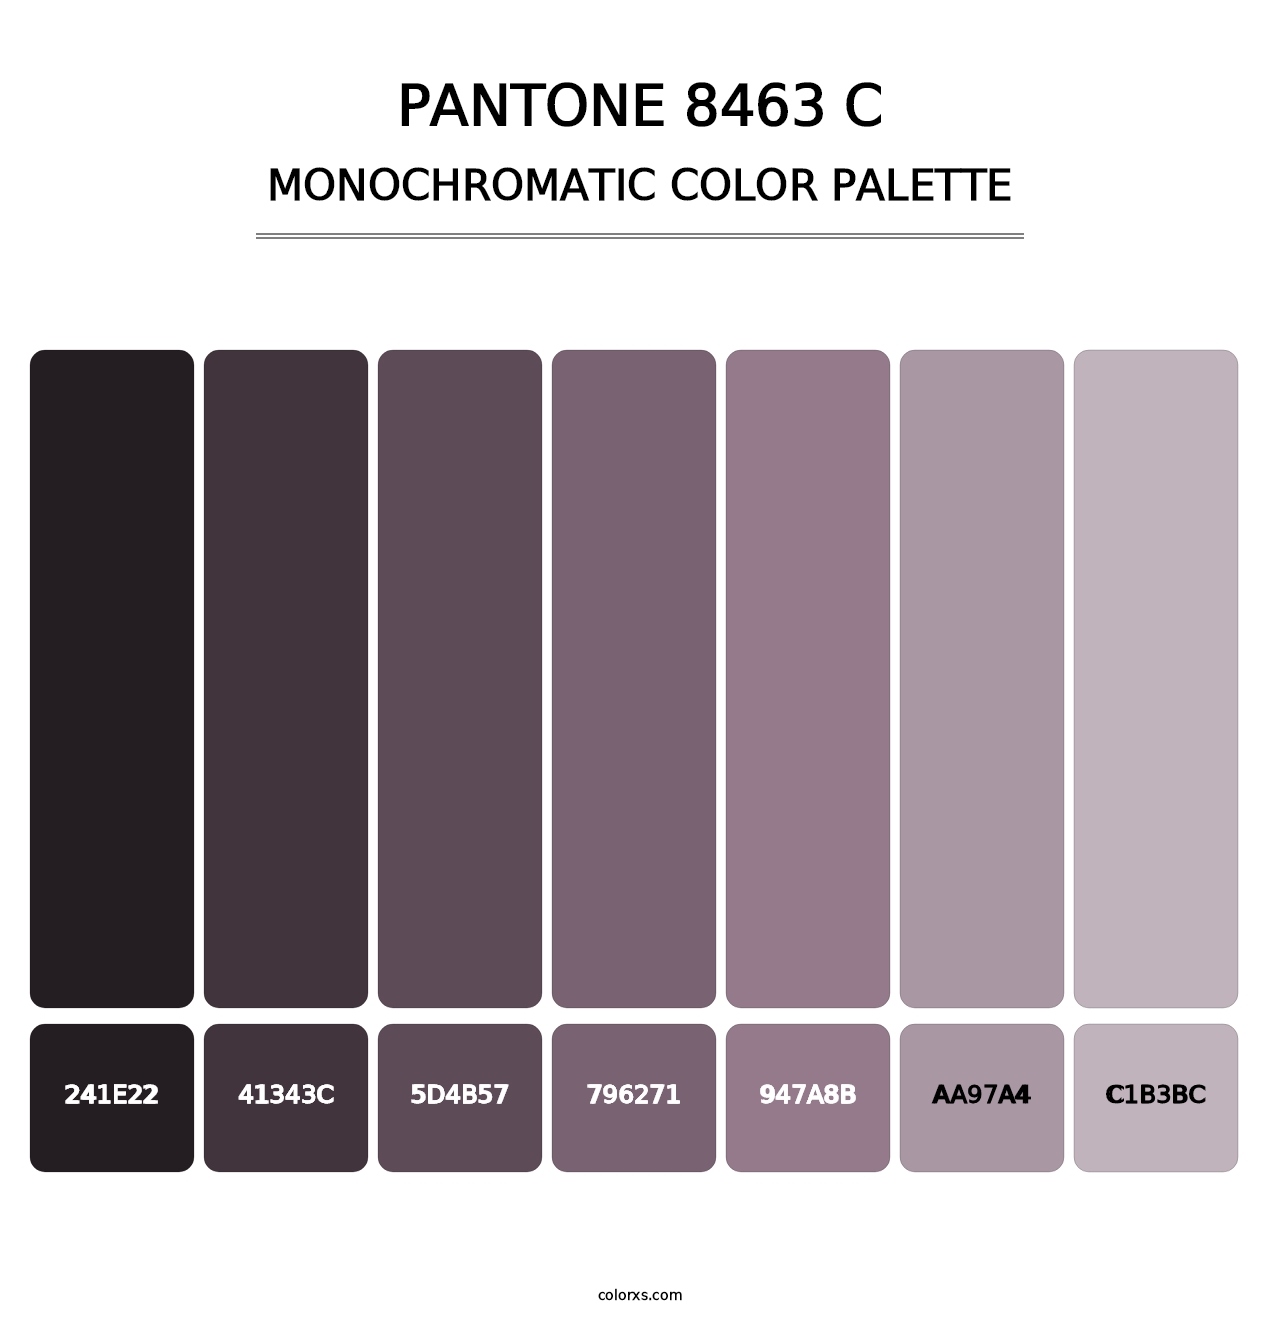 PANTONE 8463 C - Monochromatic Color Palette